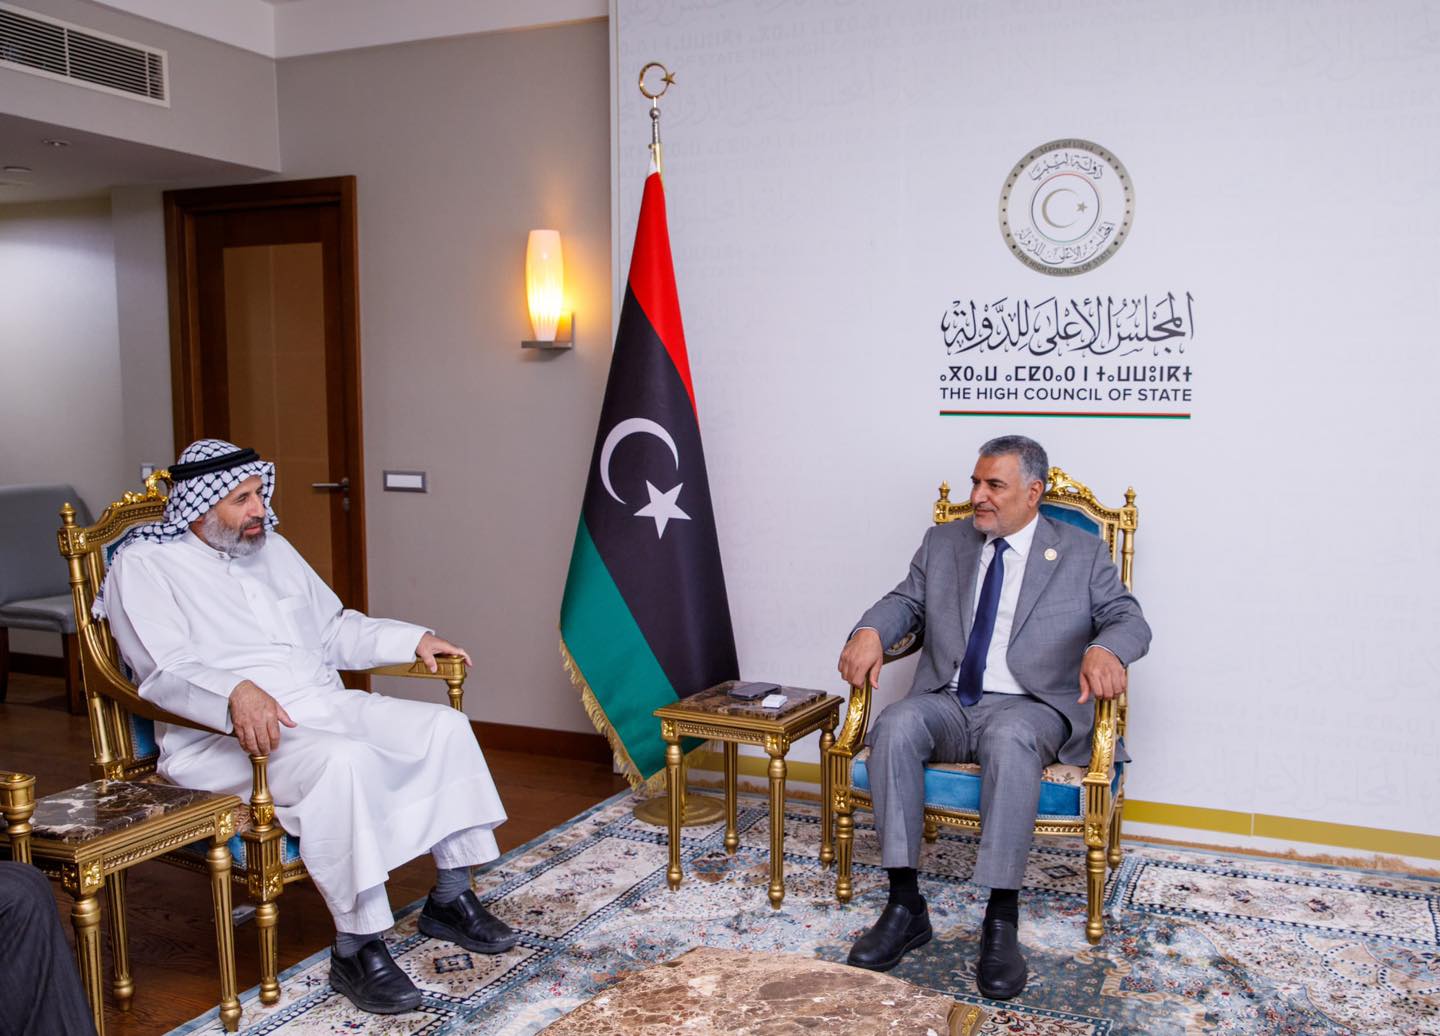 وفد العلماء يزور المجلس الأعلى للدولة في ليبيا